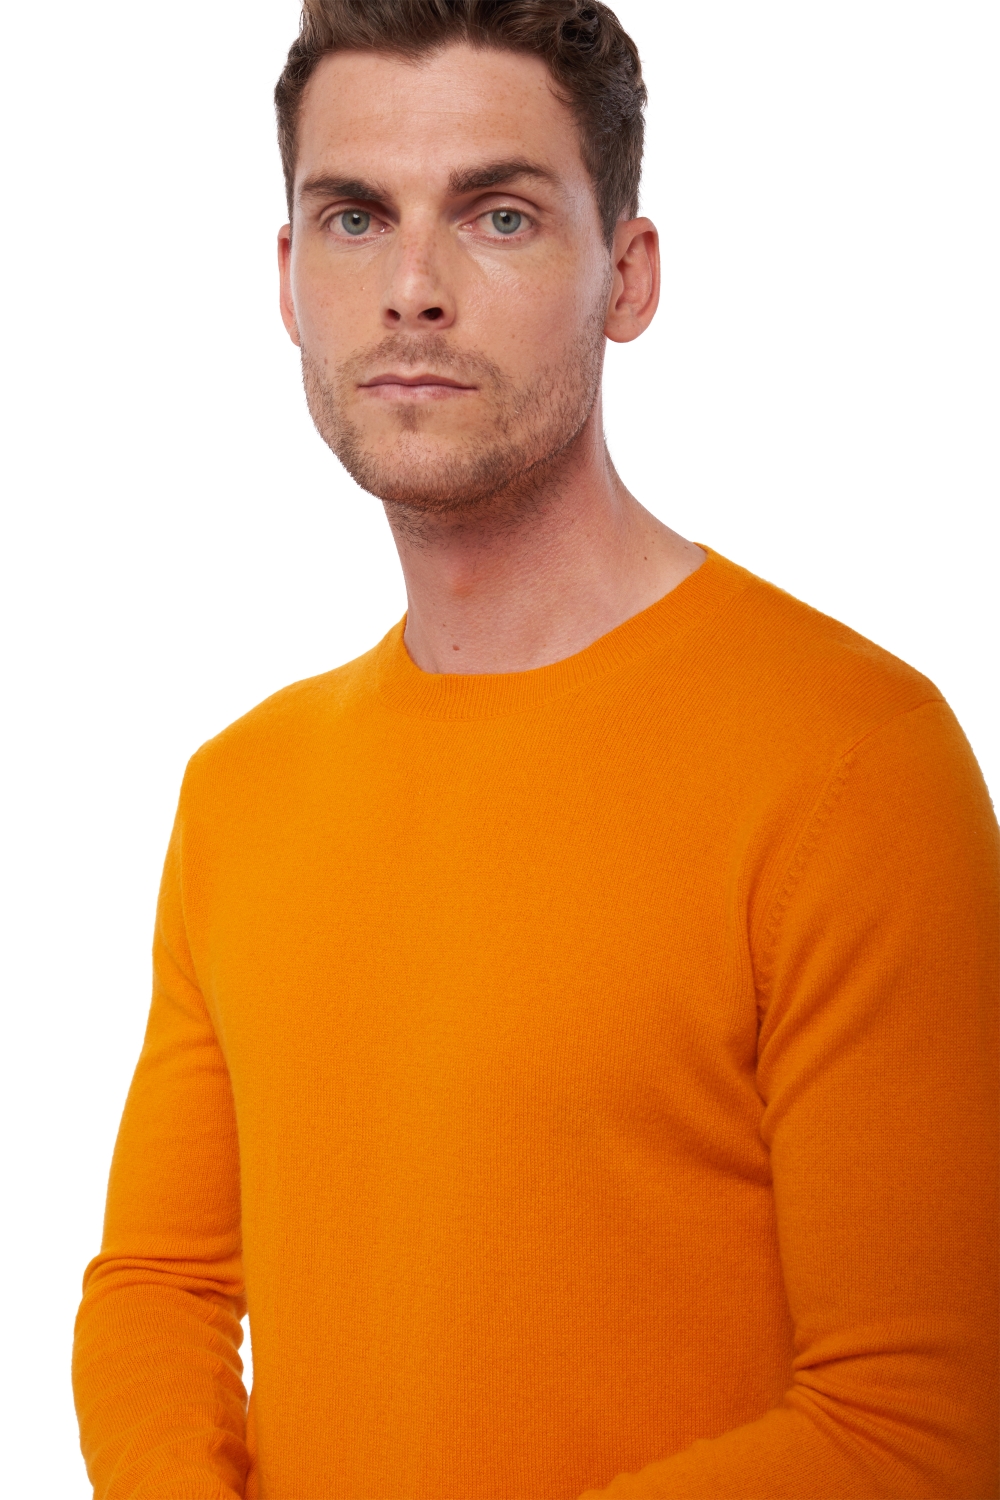 Kasjmier heren basic pullovers voor lage prijzen tao orange xl